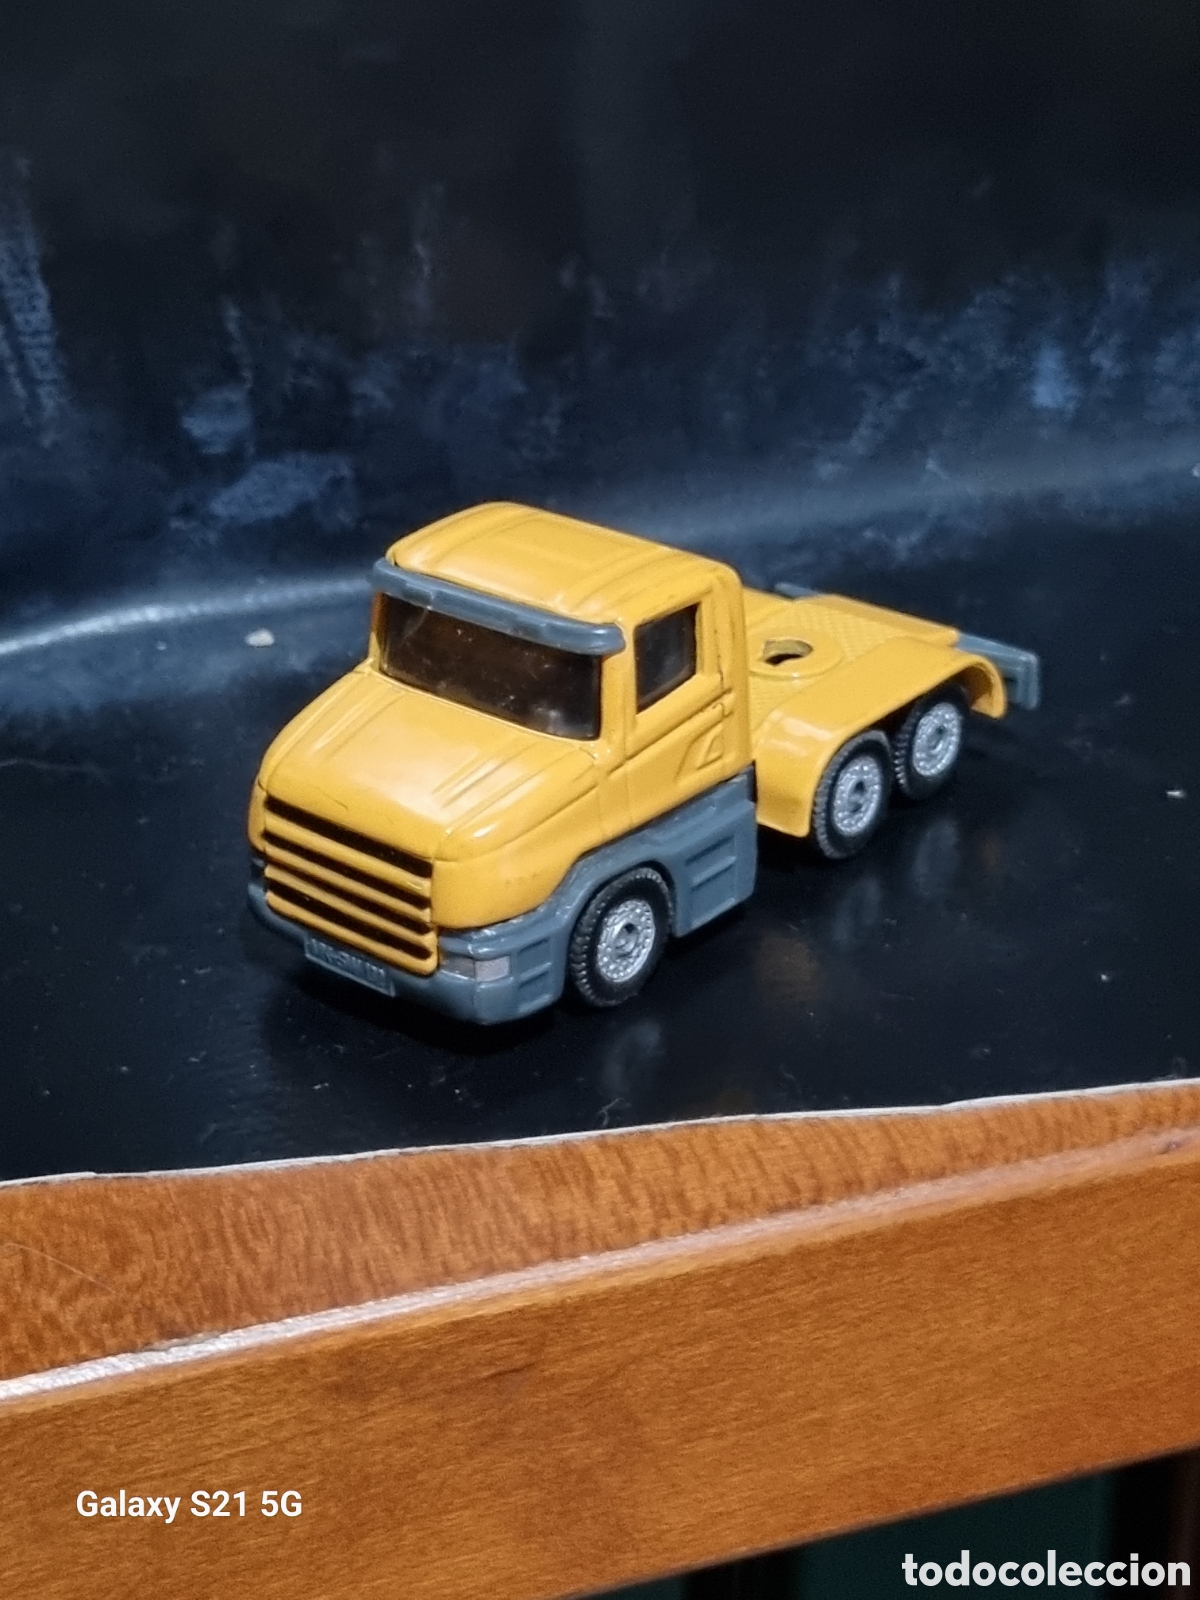 camion siku - Acquista Modellini auto in altre scale su todocoleccion